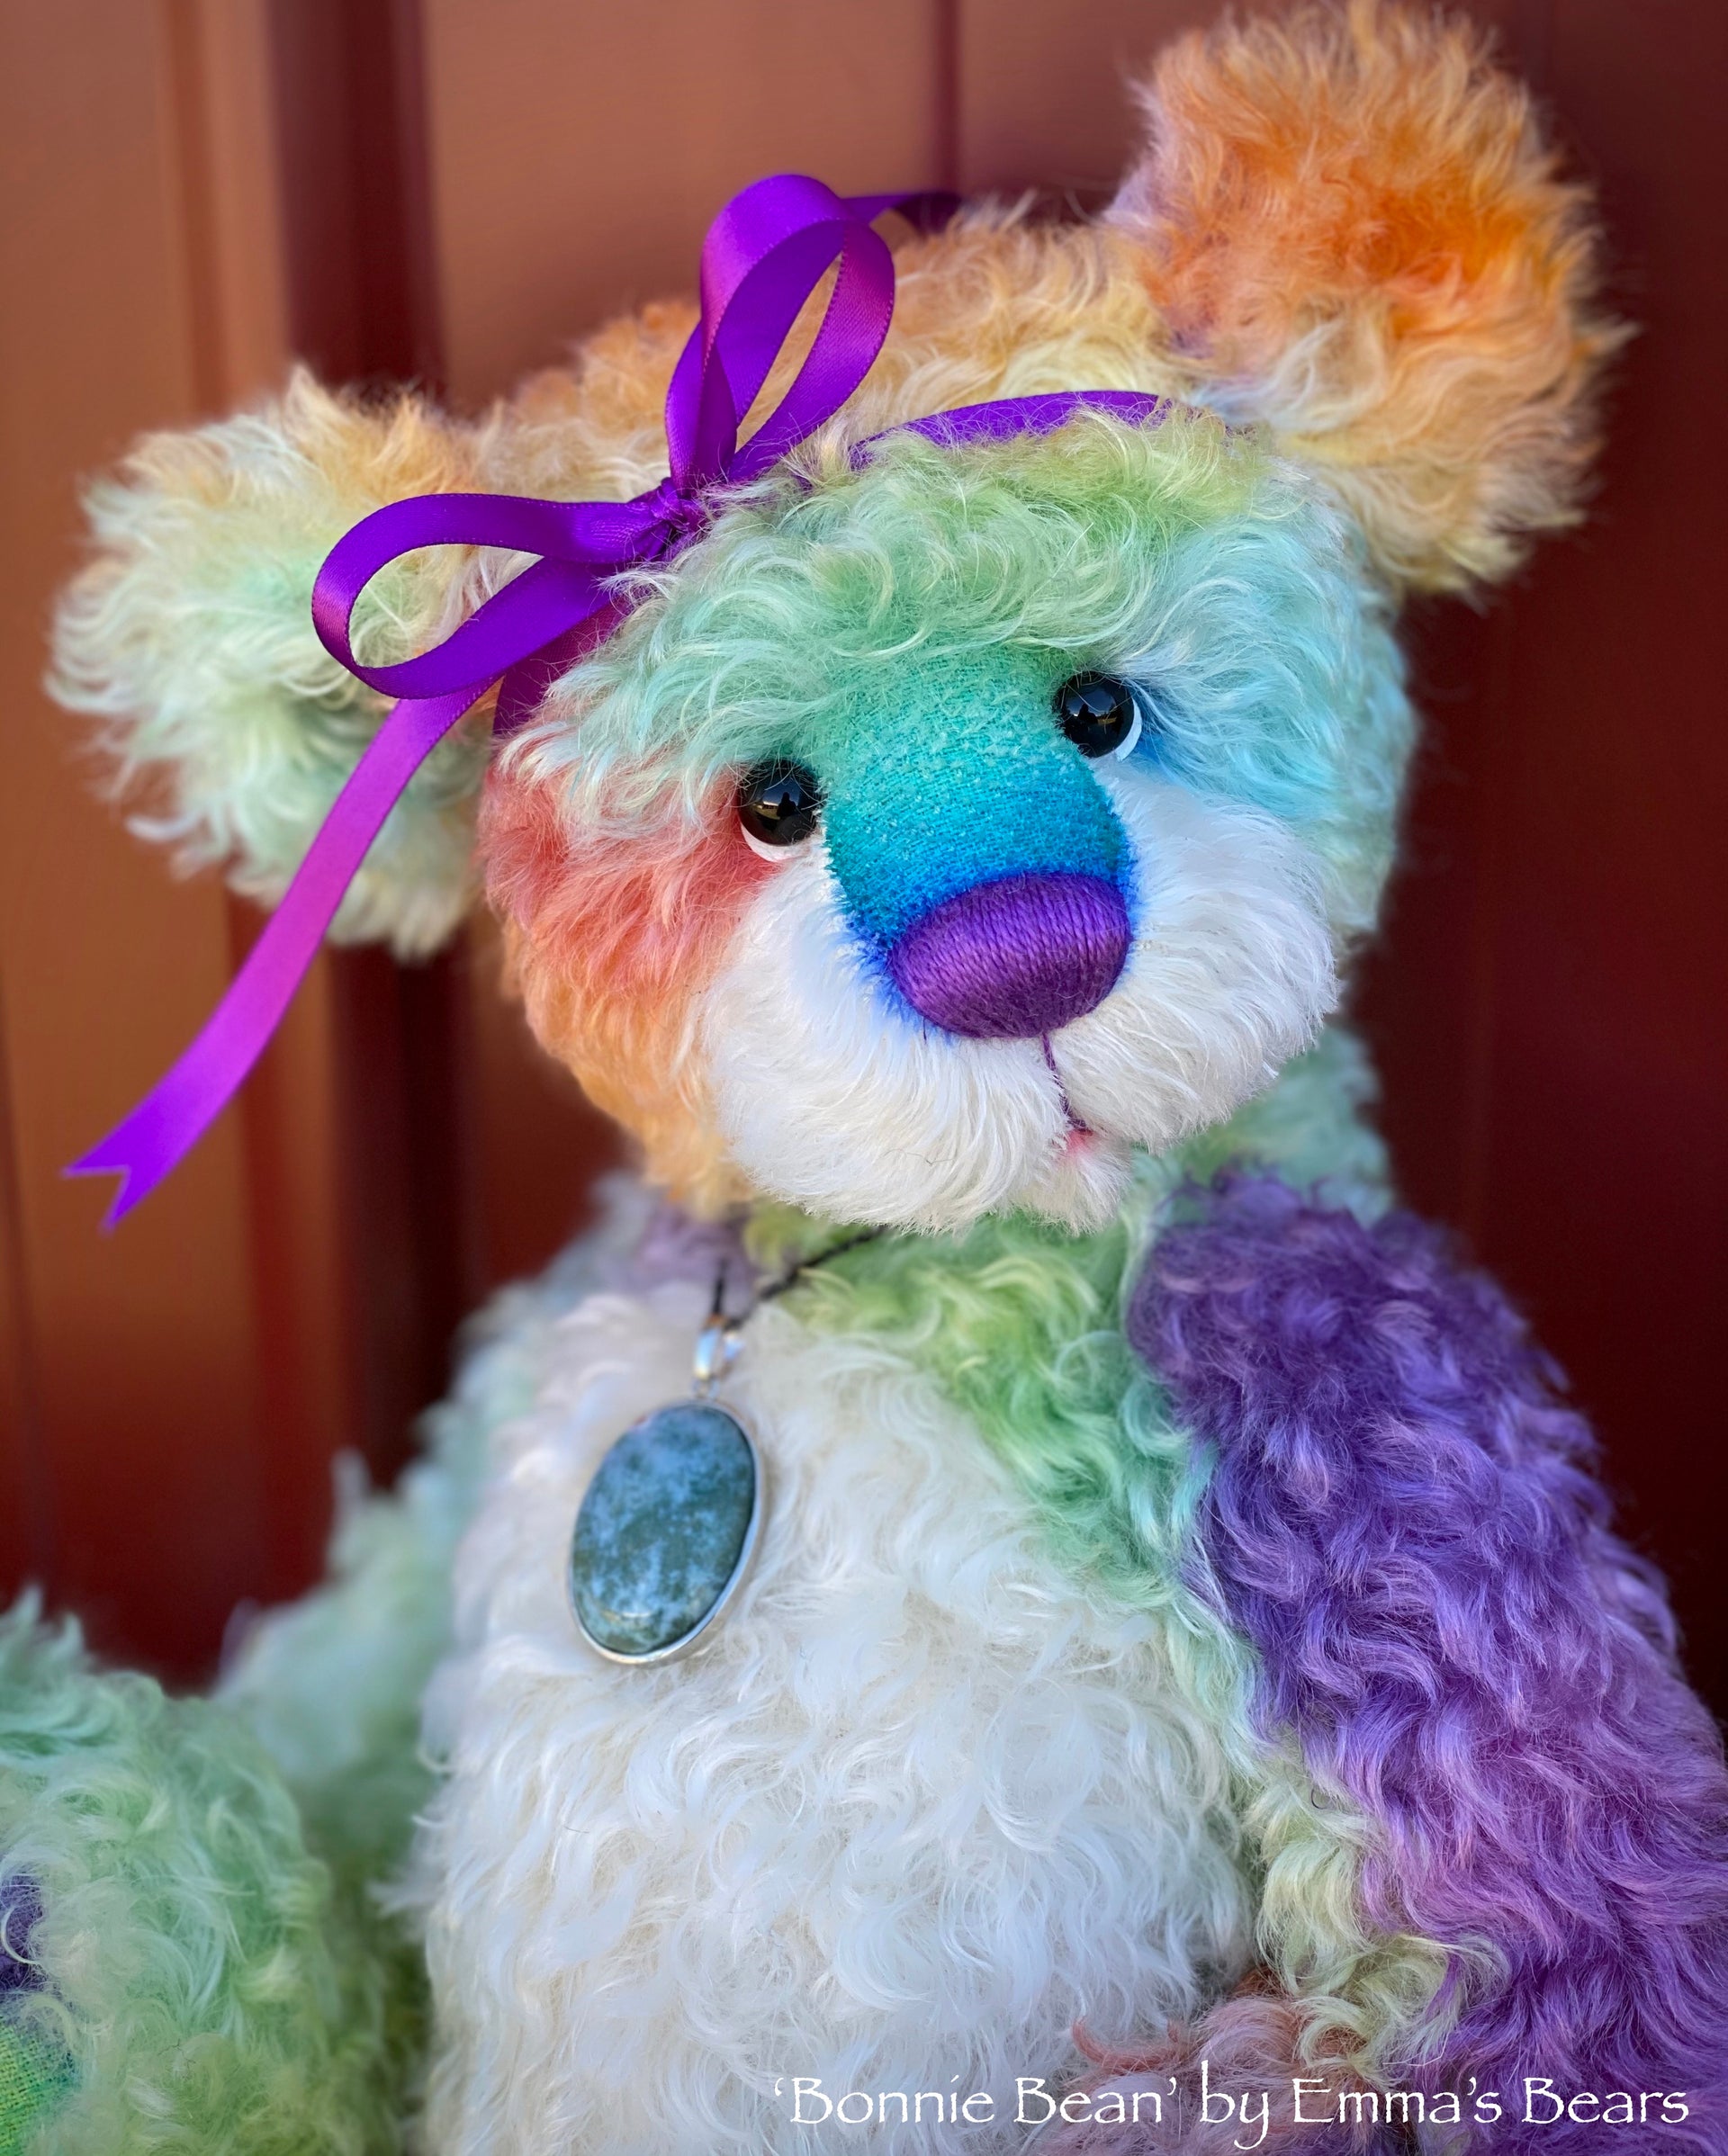 Bonnie Bean - 15" hand dyed rainbow curly kid mohair Artist Bear by Emma's Bears - OOAK